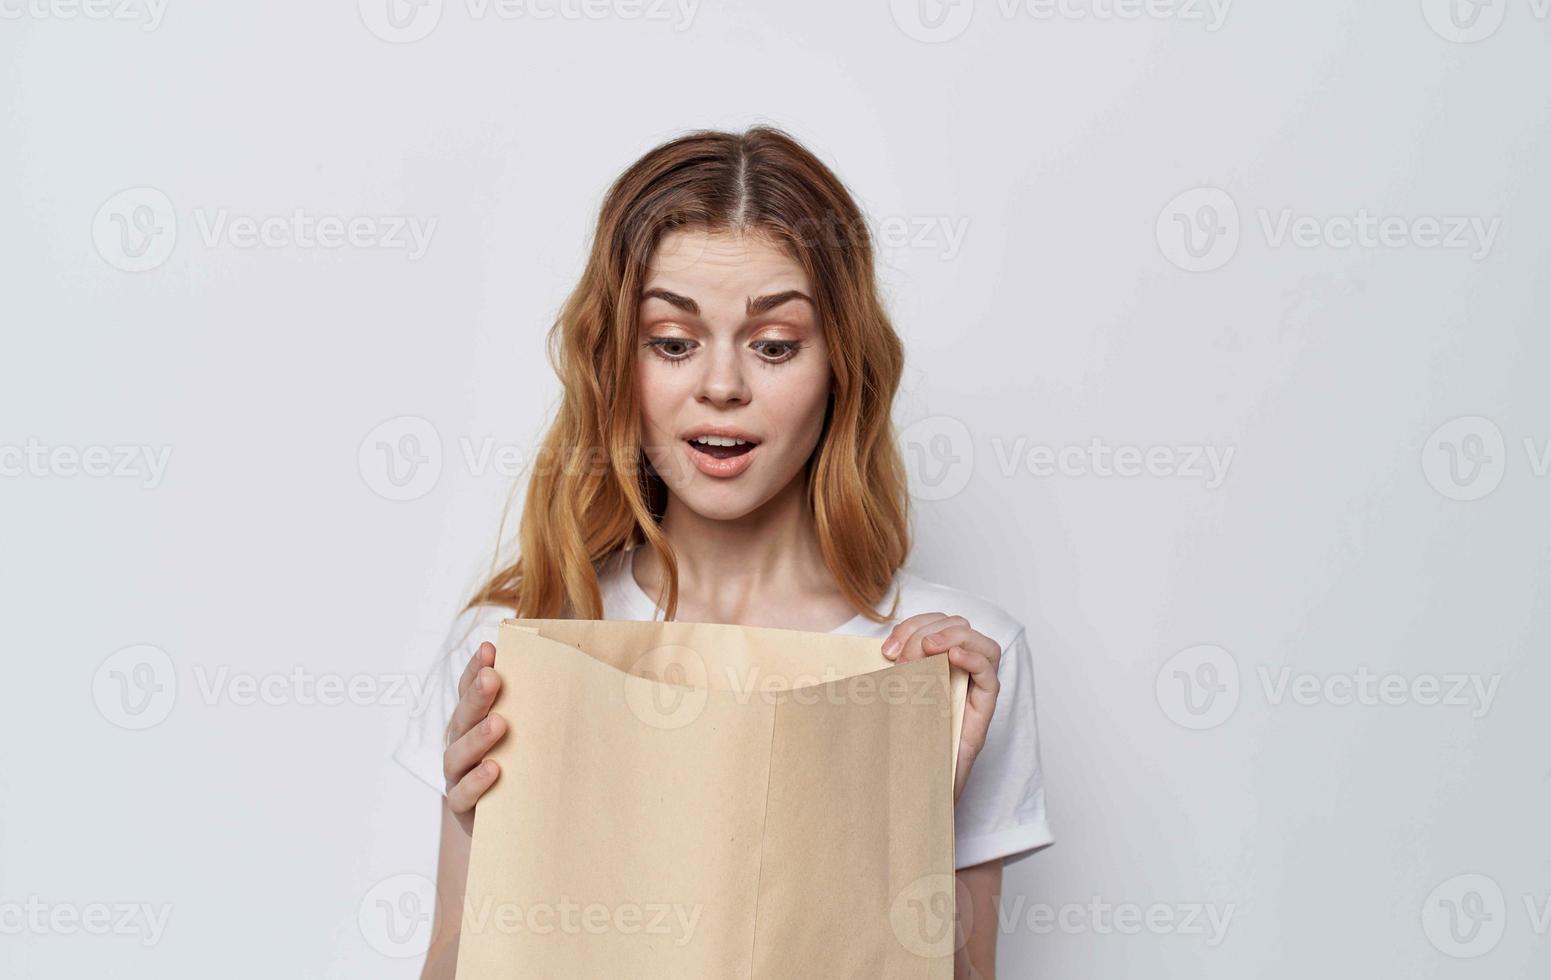 kvinna i en vit t-shirt med en paket i henne händer handla foto